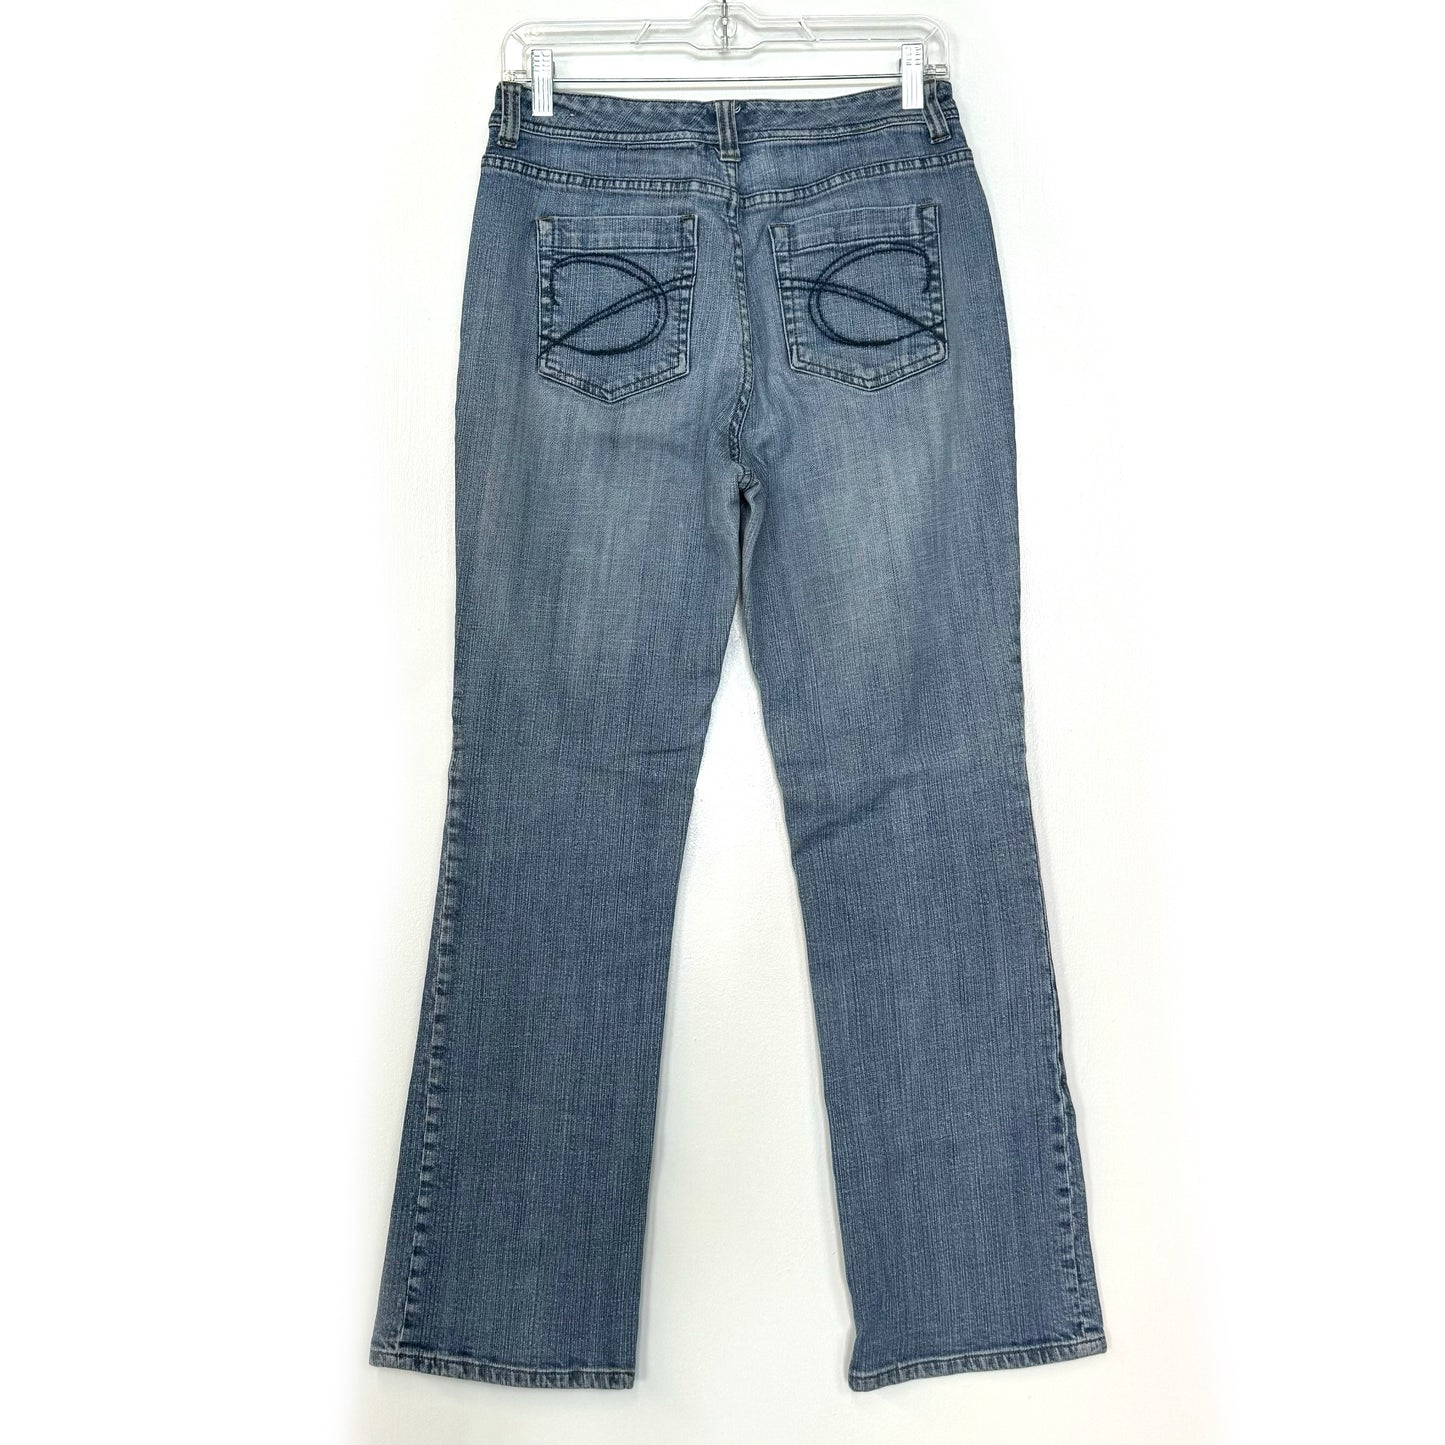 Chicos Platinum | Womens Denim Jeans | Color: Blue | Size: 0 Reg | EUC